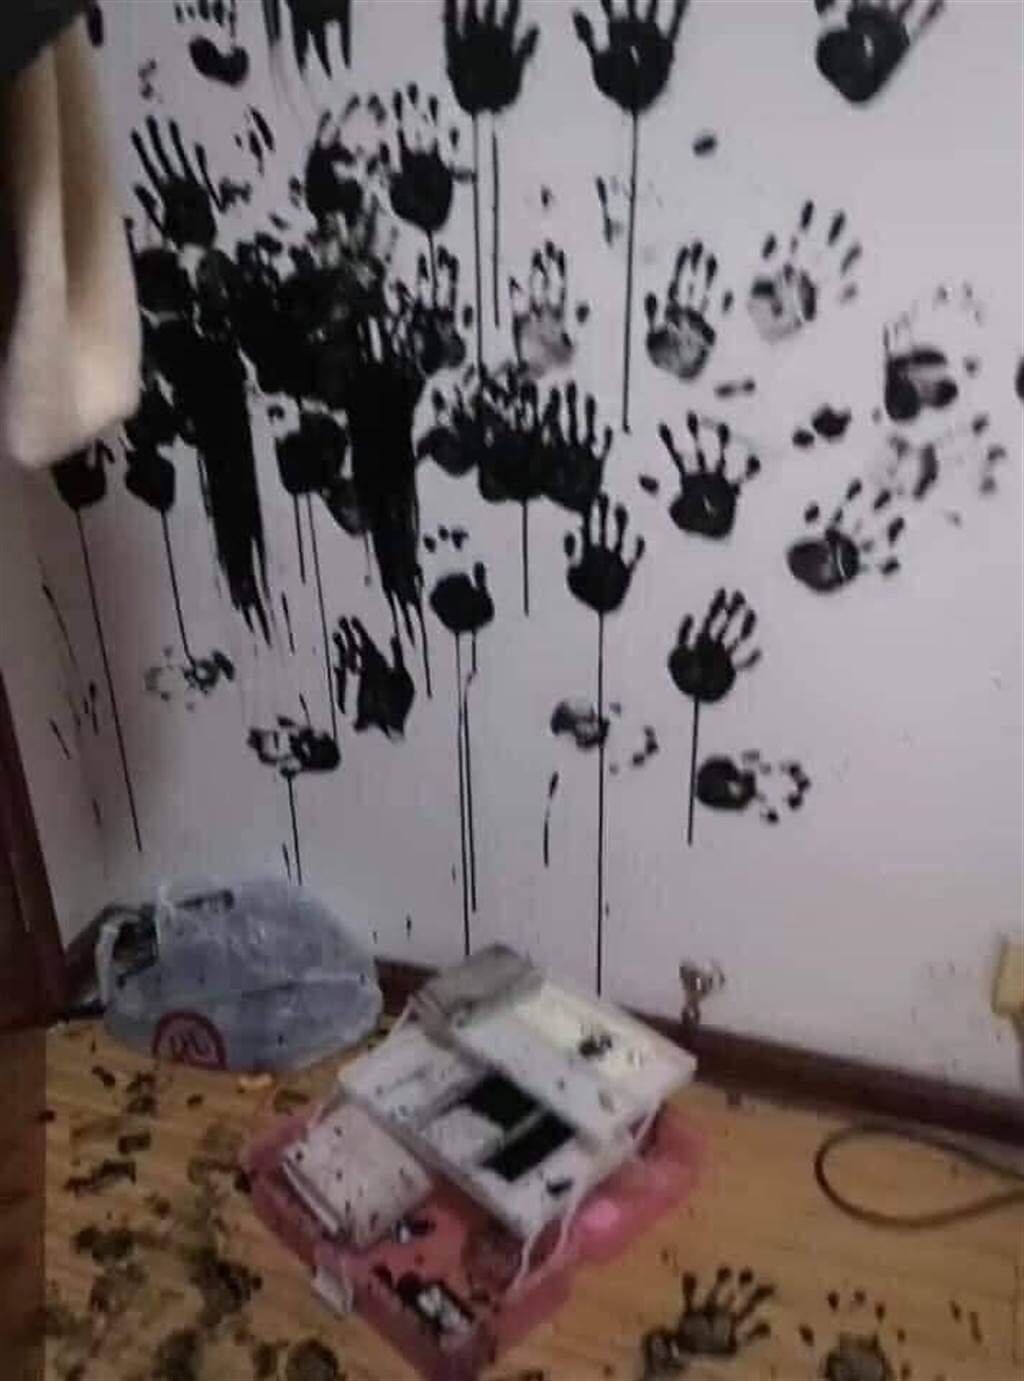 1名網友分享女兒用「黑手印」為牆壁留下的「傑作」，只見牆上密密麻麻的墨汁手印，女兒臉上、雙手也全是墨汁，事後女兒還相當酷跩地站在一旁。（翻攝自臉書「爆廢公社公開版」）